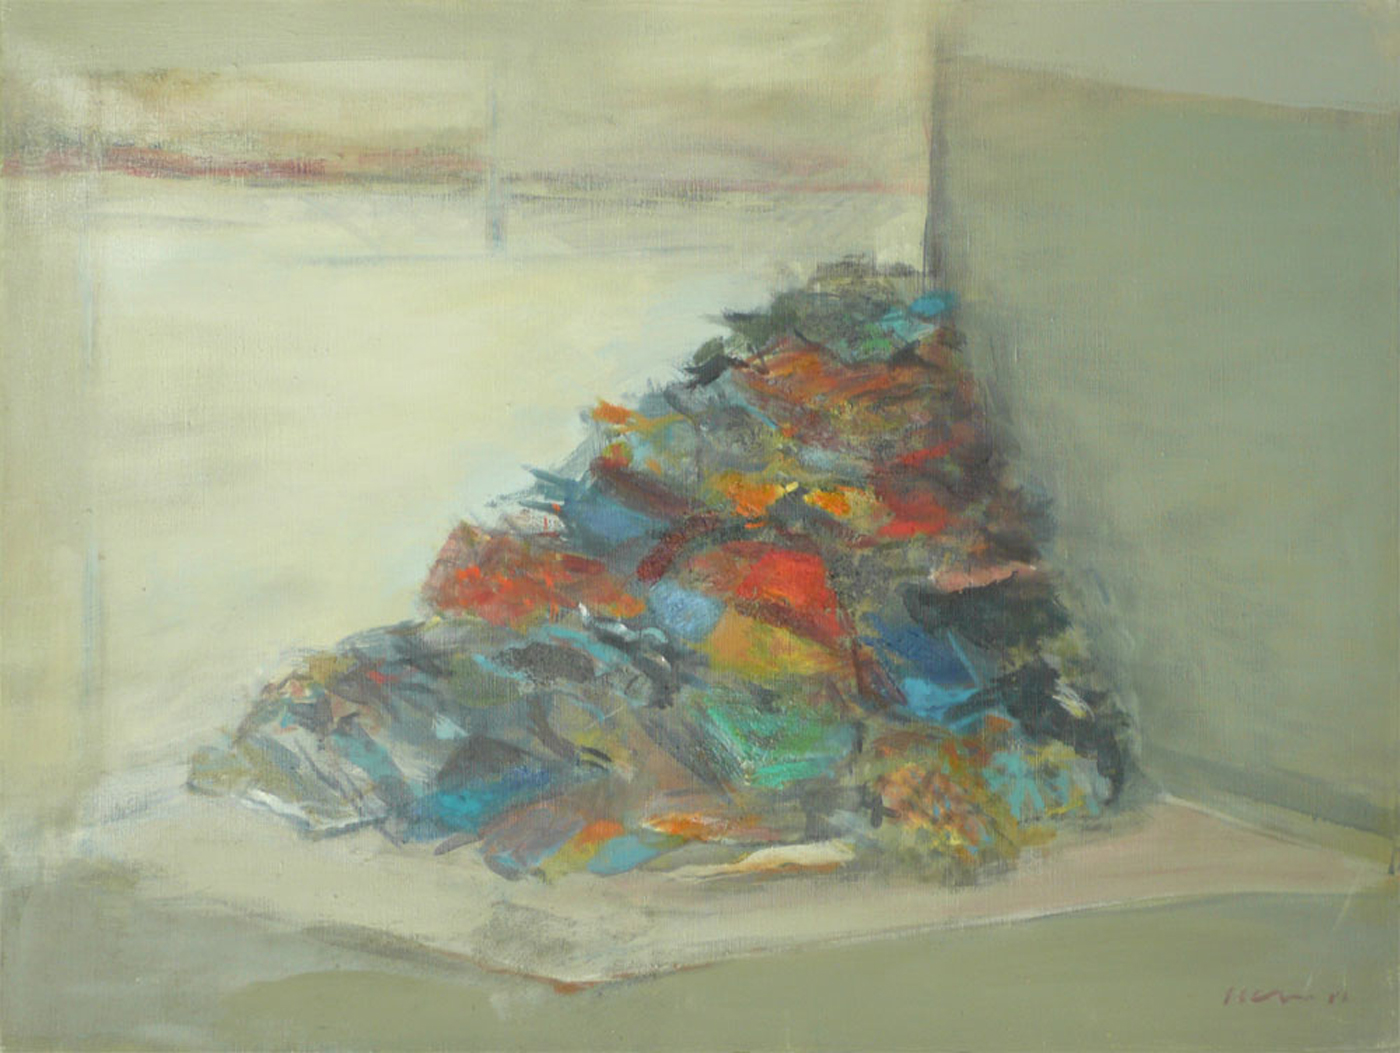 Sédiments colorés n° 1, 1984, huile sur toile, 73x54cm